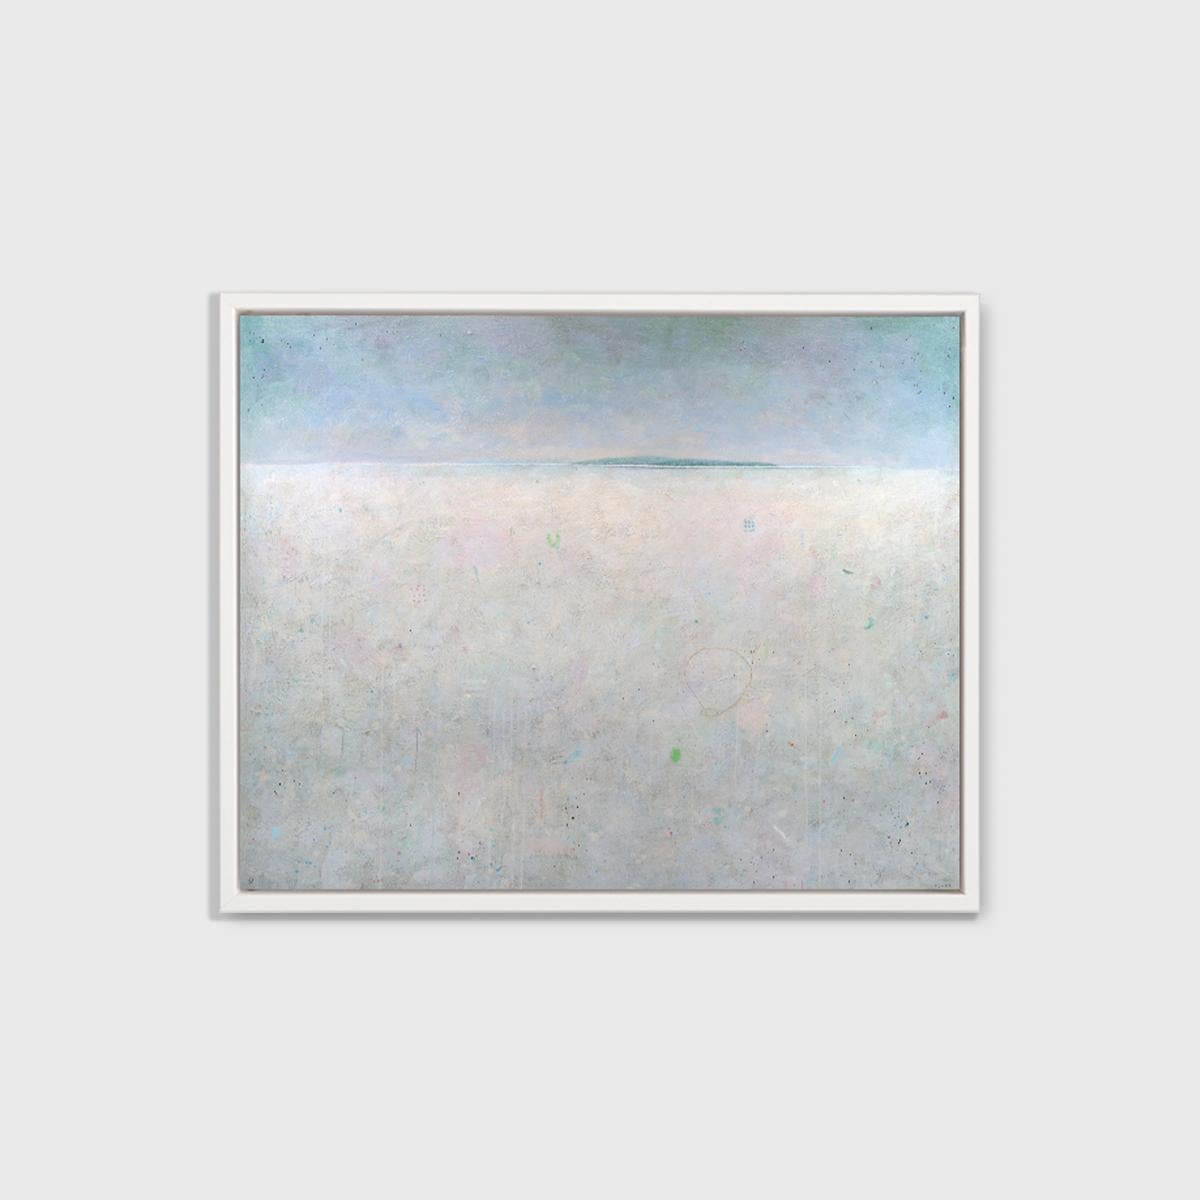 Ce paysage abstrait imprimé en édition limitée par Elwood Howell présente une ligne d'horizon élevée, séparant un premier plan pâle, presque gris, et un ciel bleu dégradé. Le long de la ligne d'horizon, une fine bande bleue de ce qui semble être une